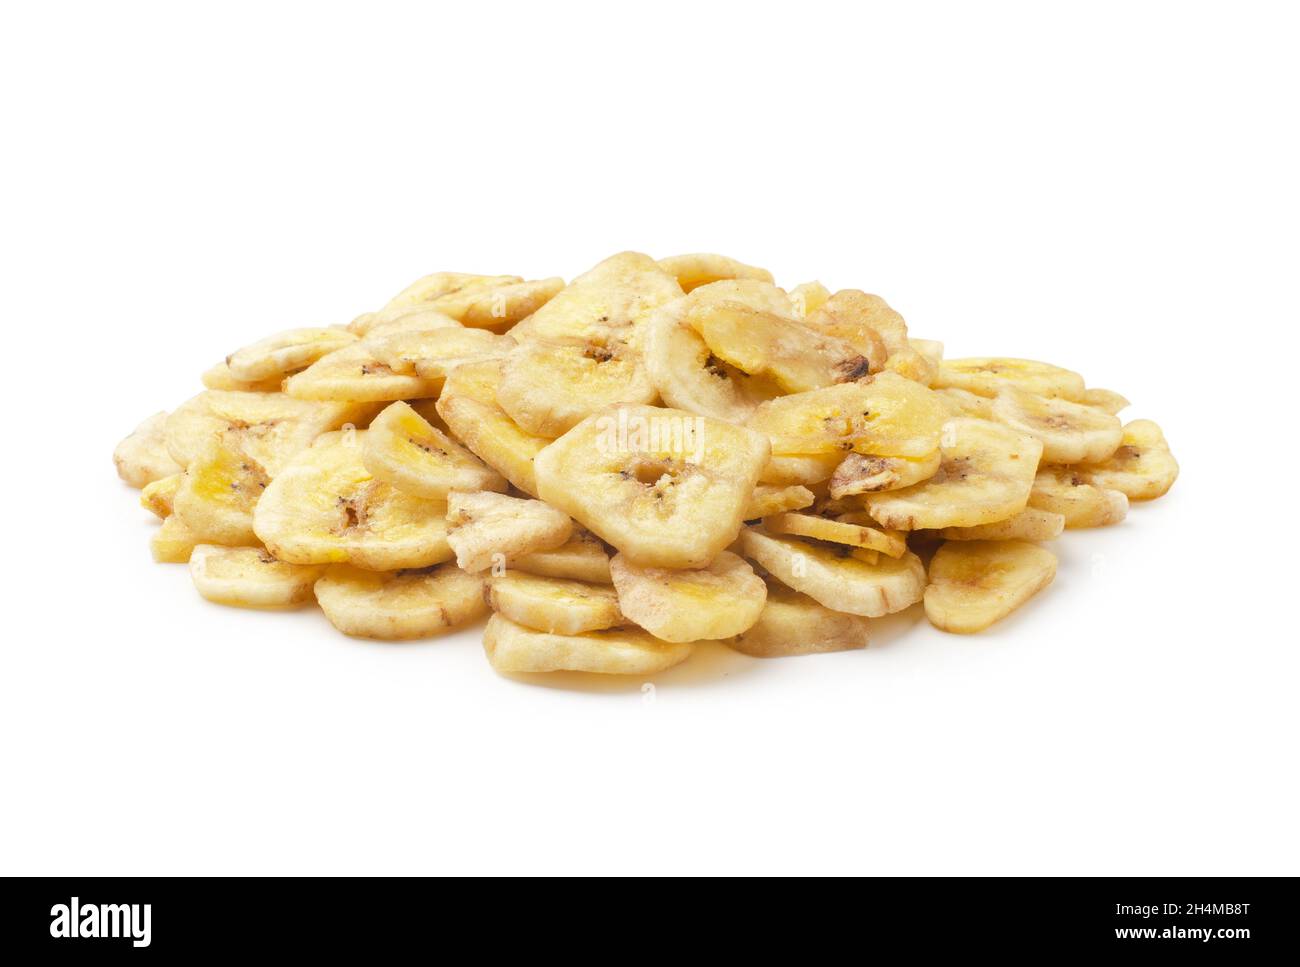 Patatas fritas caseras de plátano o rodajas de plátano secas y fritas aisladas sobre fondo blanco Foto de stock